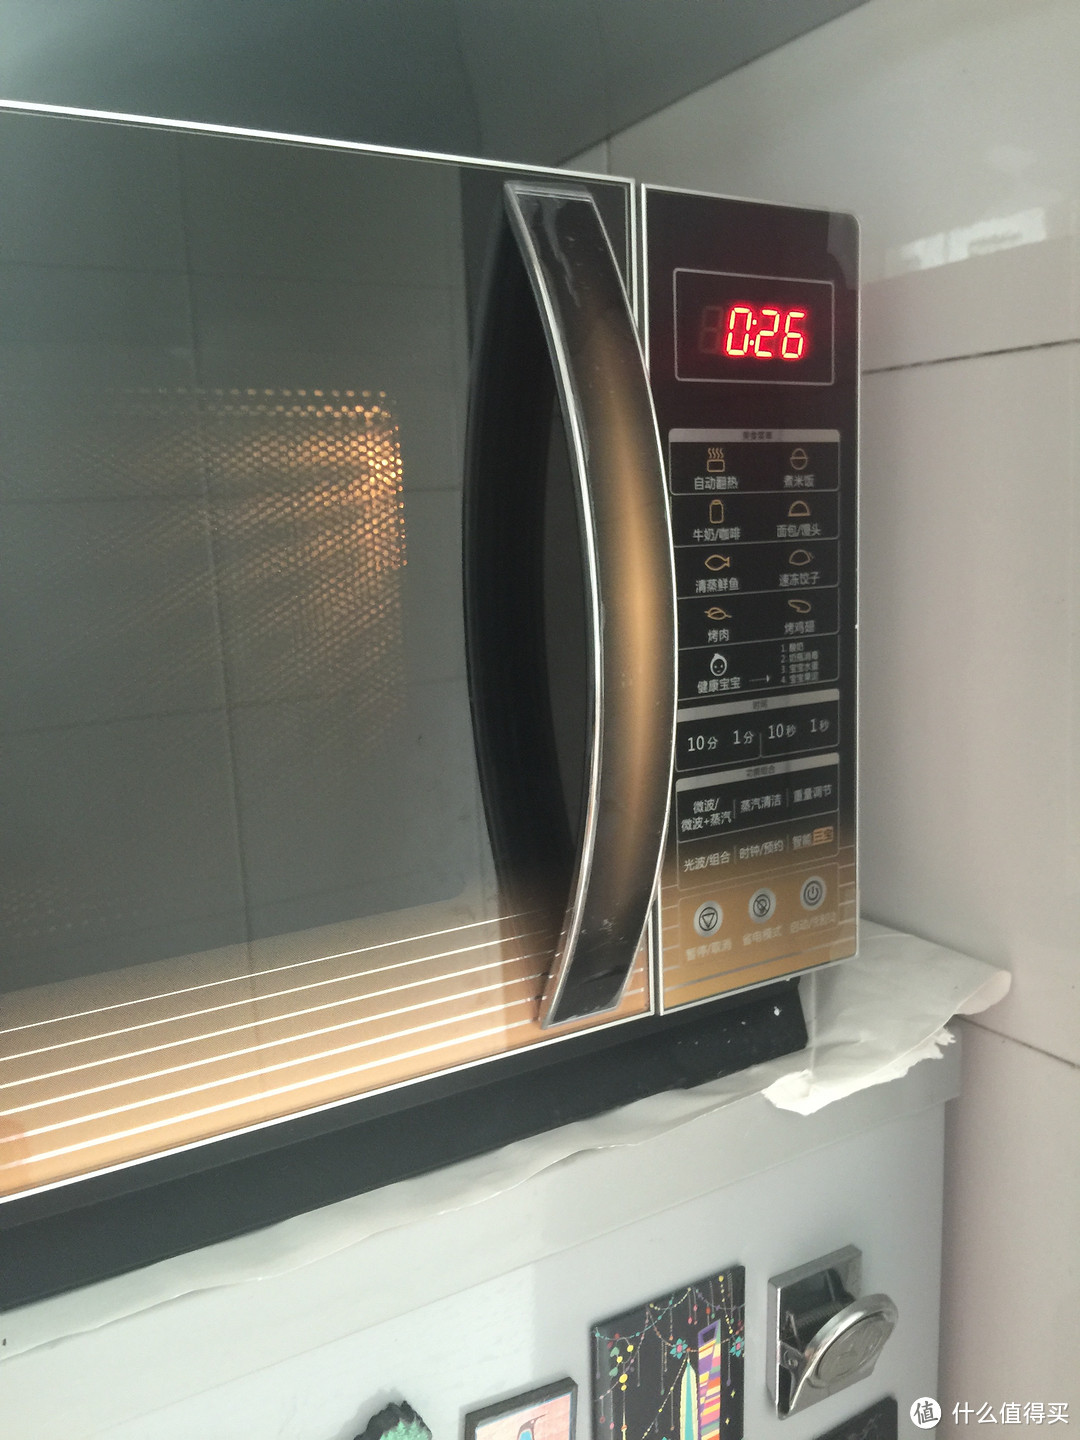 家用厨房电器蜕变之路——格兰仕 智能微波炉光波炉评测报告